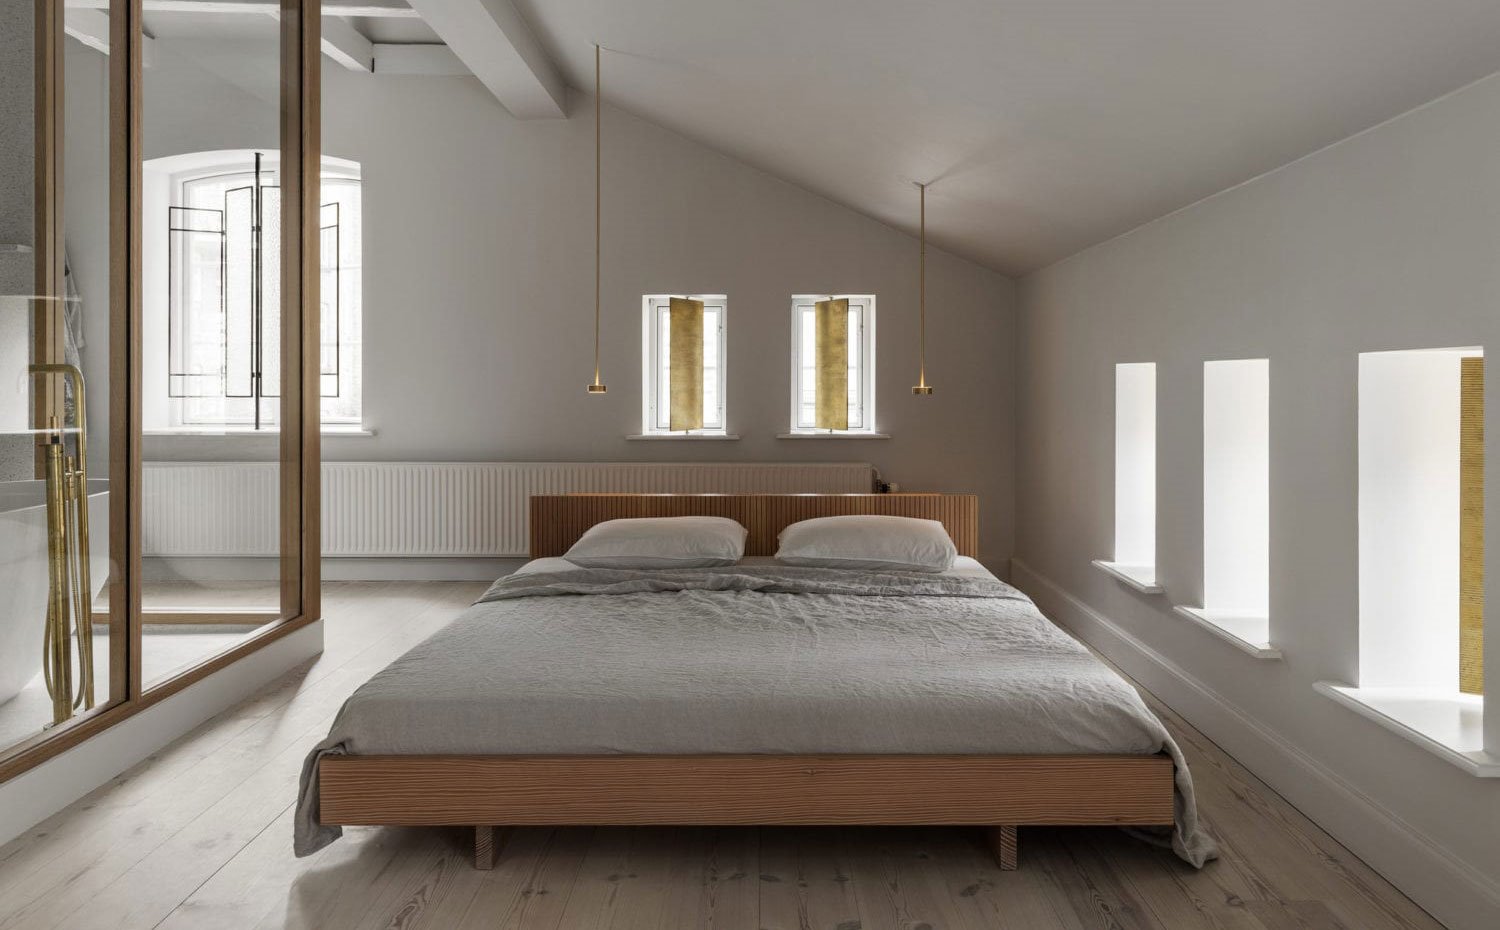 Zona dormitorio, cama con estructura de madera, luminarias suspendidas junto a cabecero, cerramiento de cristal con cuarto de baño